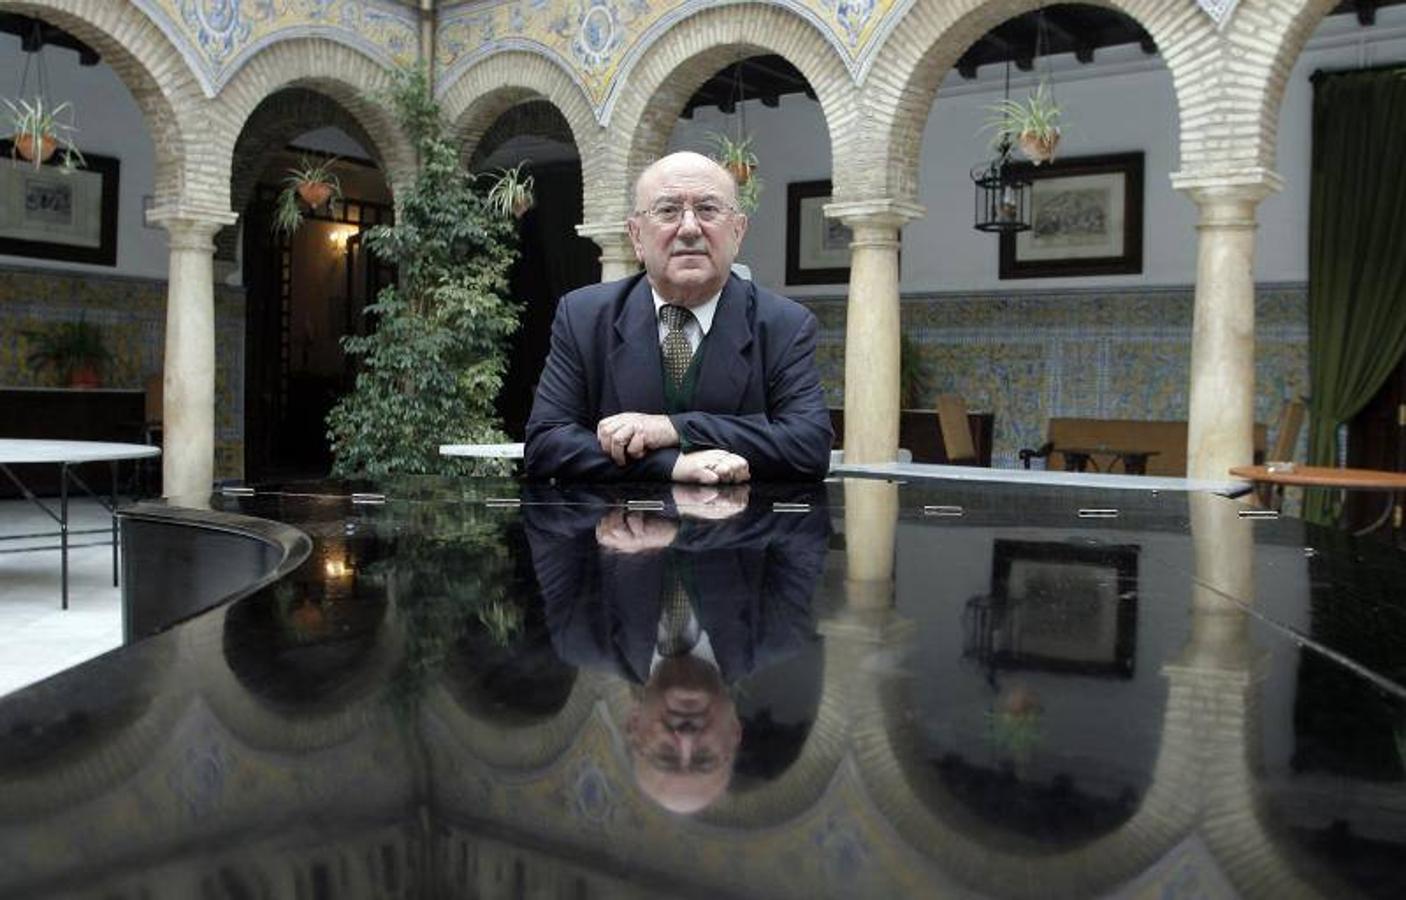 Las últimas décadas de Luis Bedmar en Córdoba, en imágenes